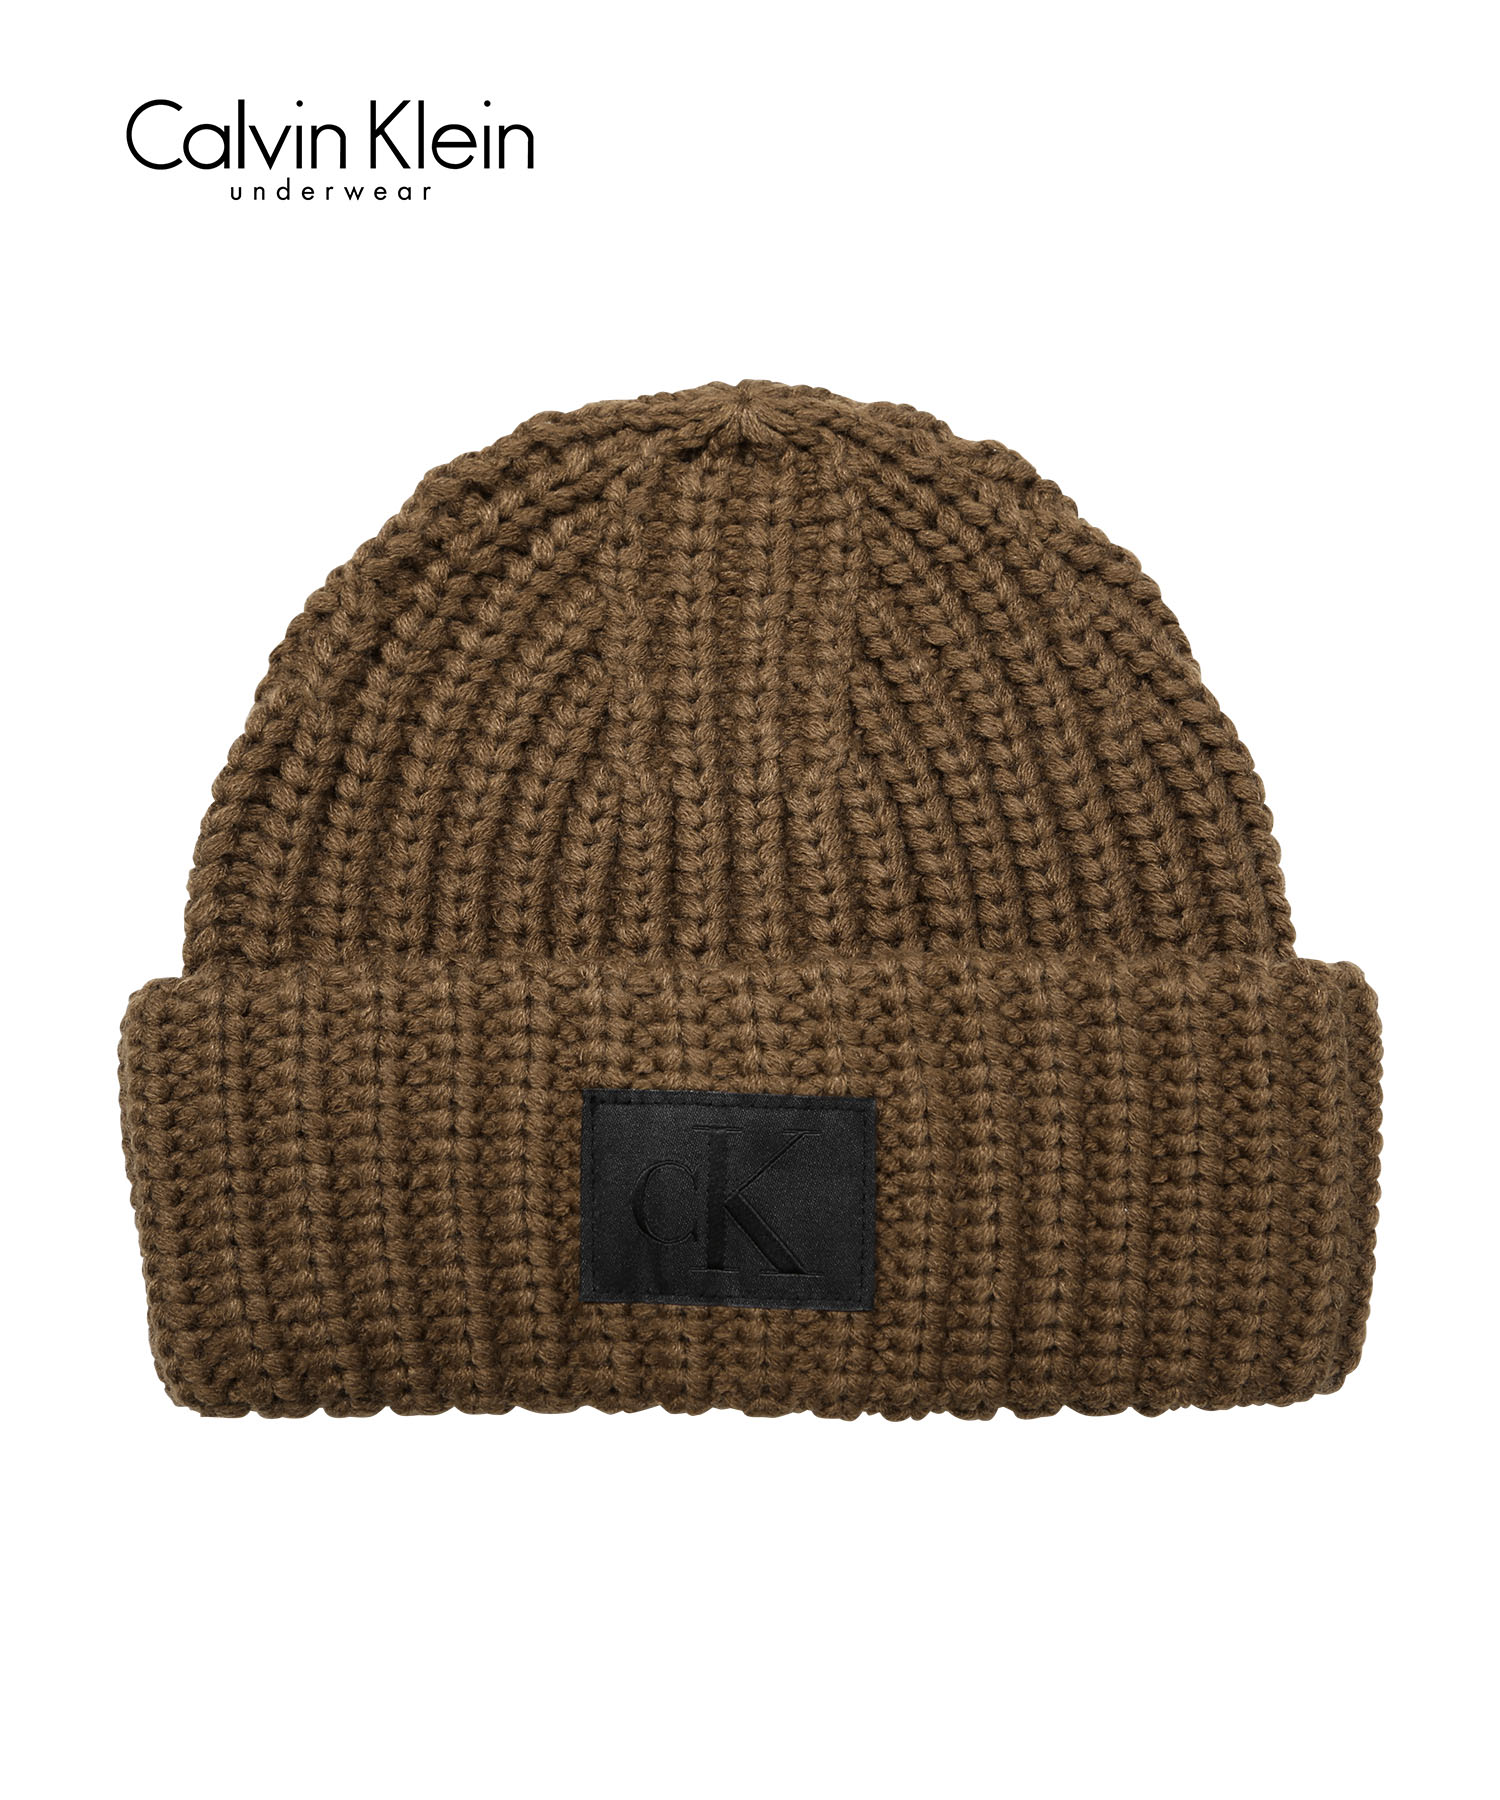 カルバンクライン Calvin Klein ニット帽 ユニセックス 帽子 ビーニー ニットキャップ ワッチ CK ロゴ 高級 ハイブランド